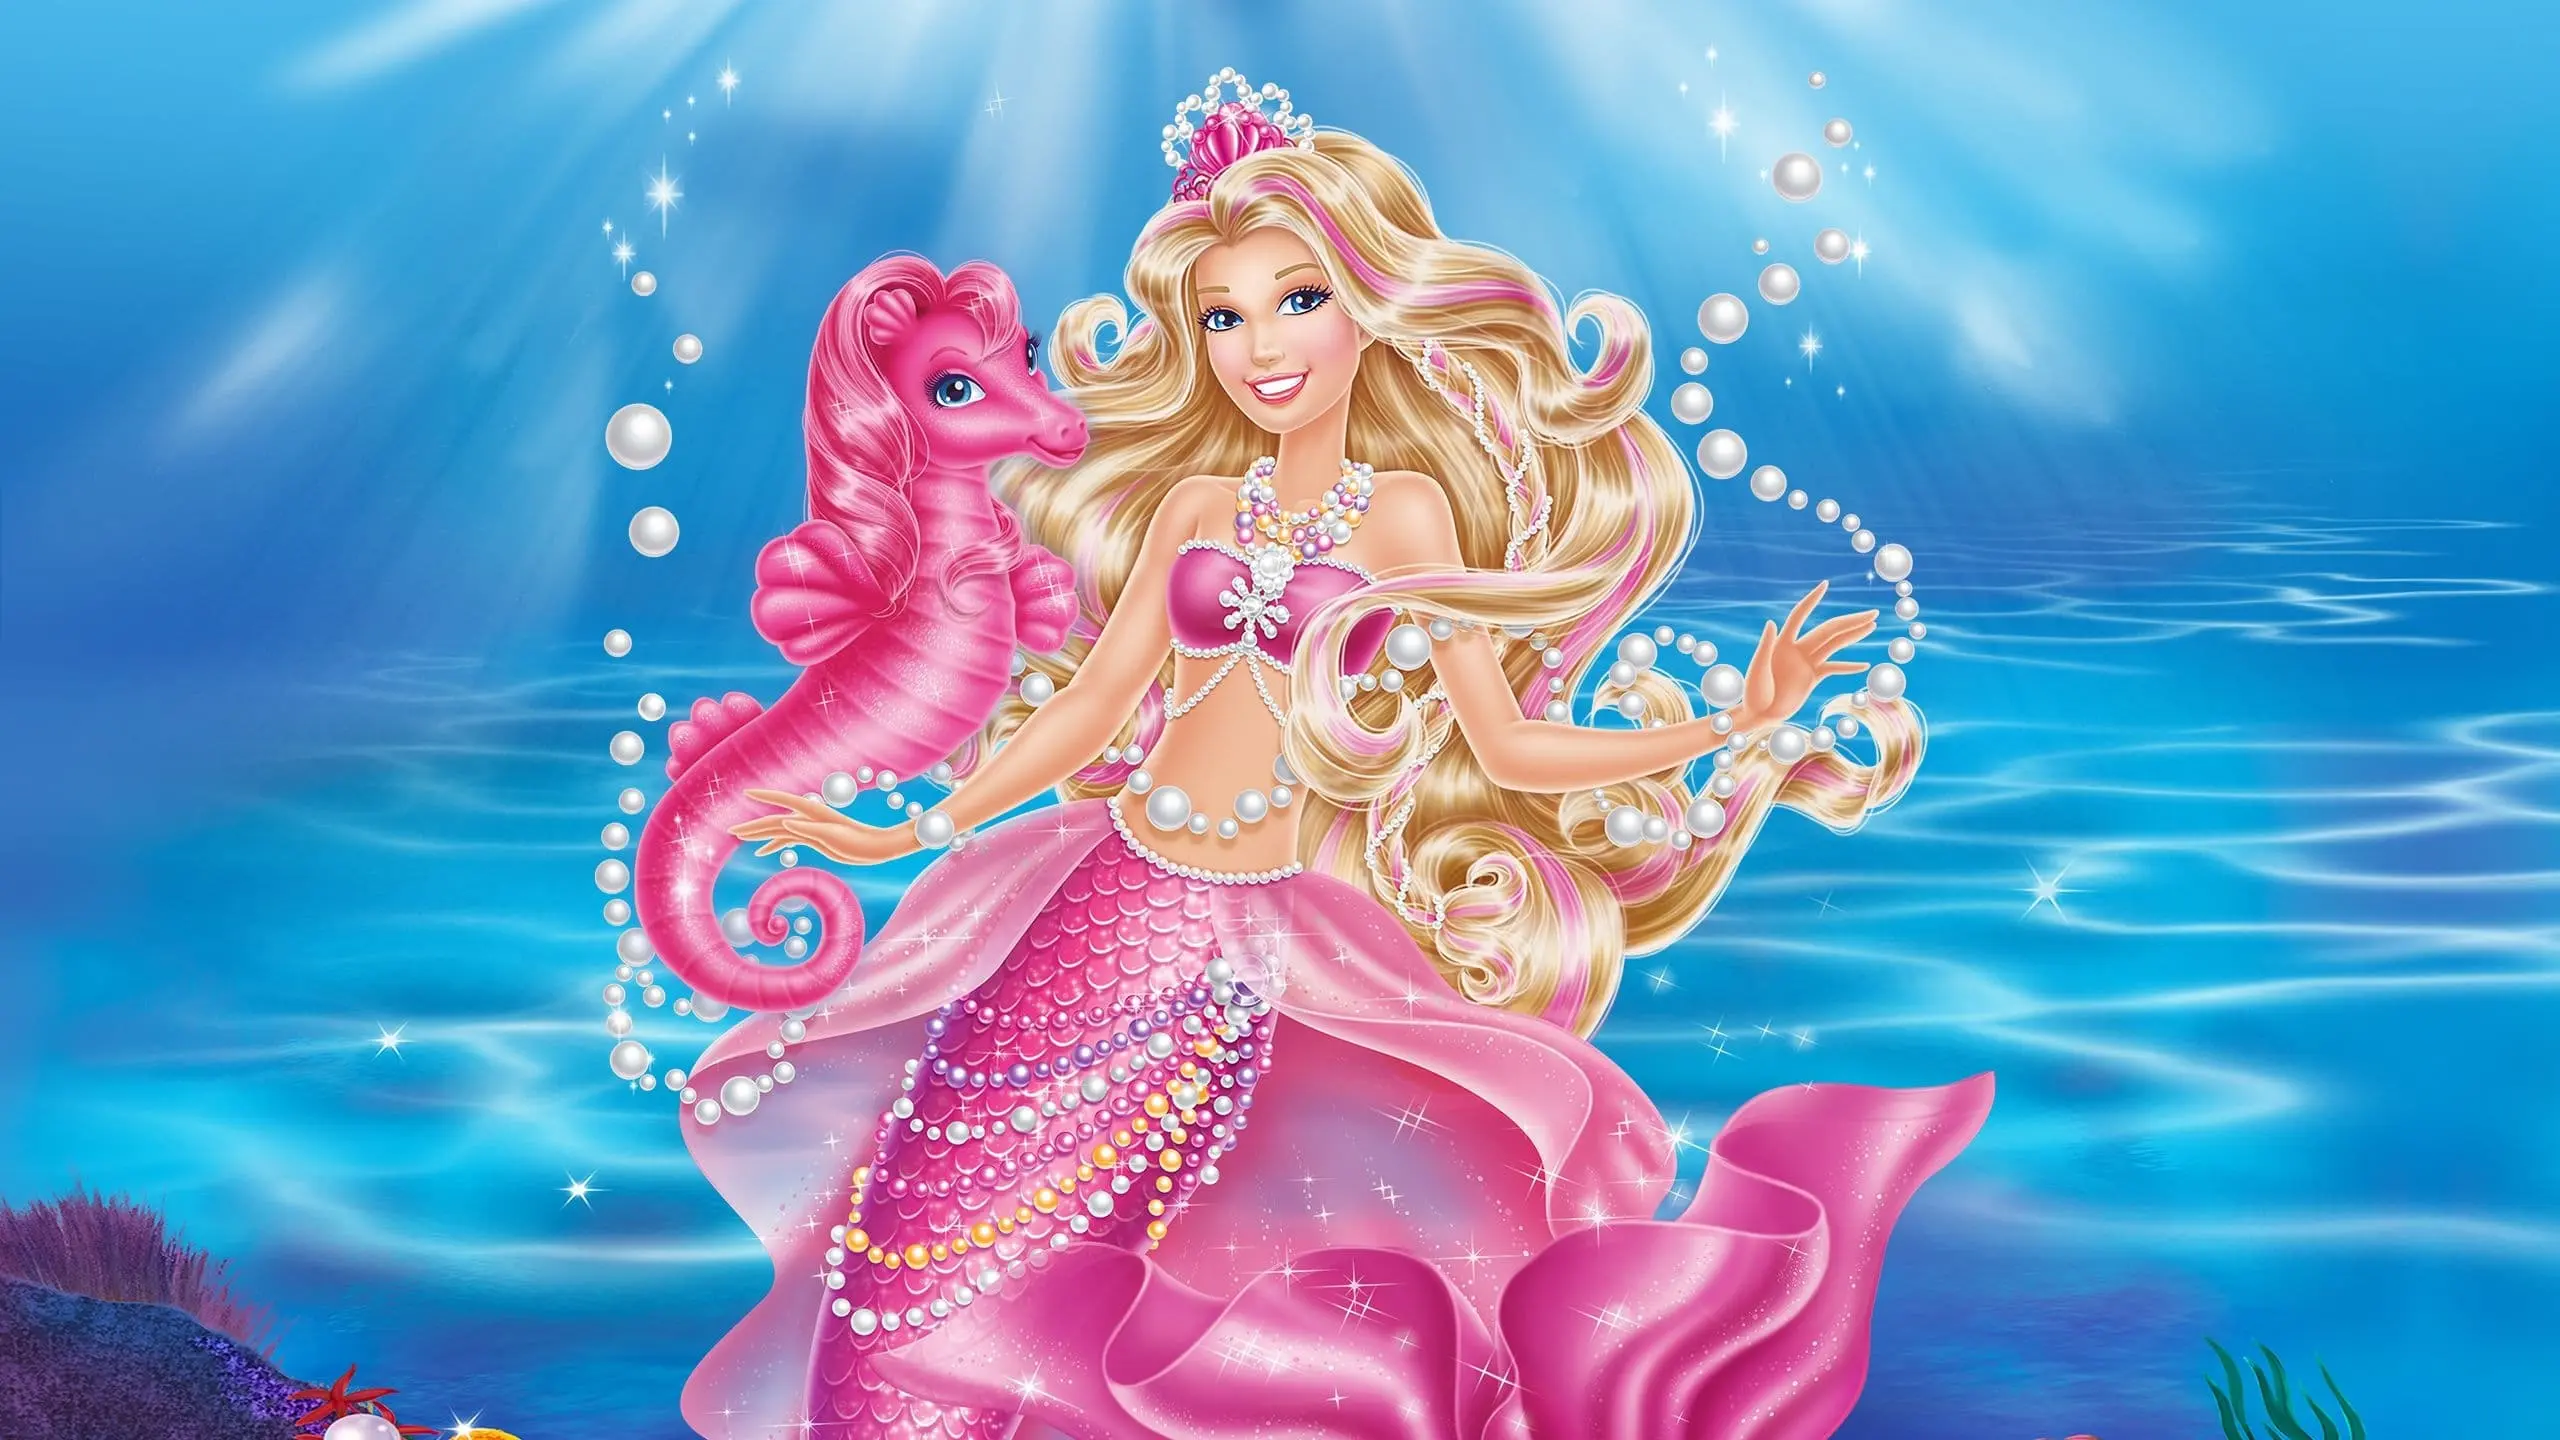 Barbie in Die magischen Perlen